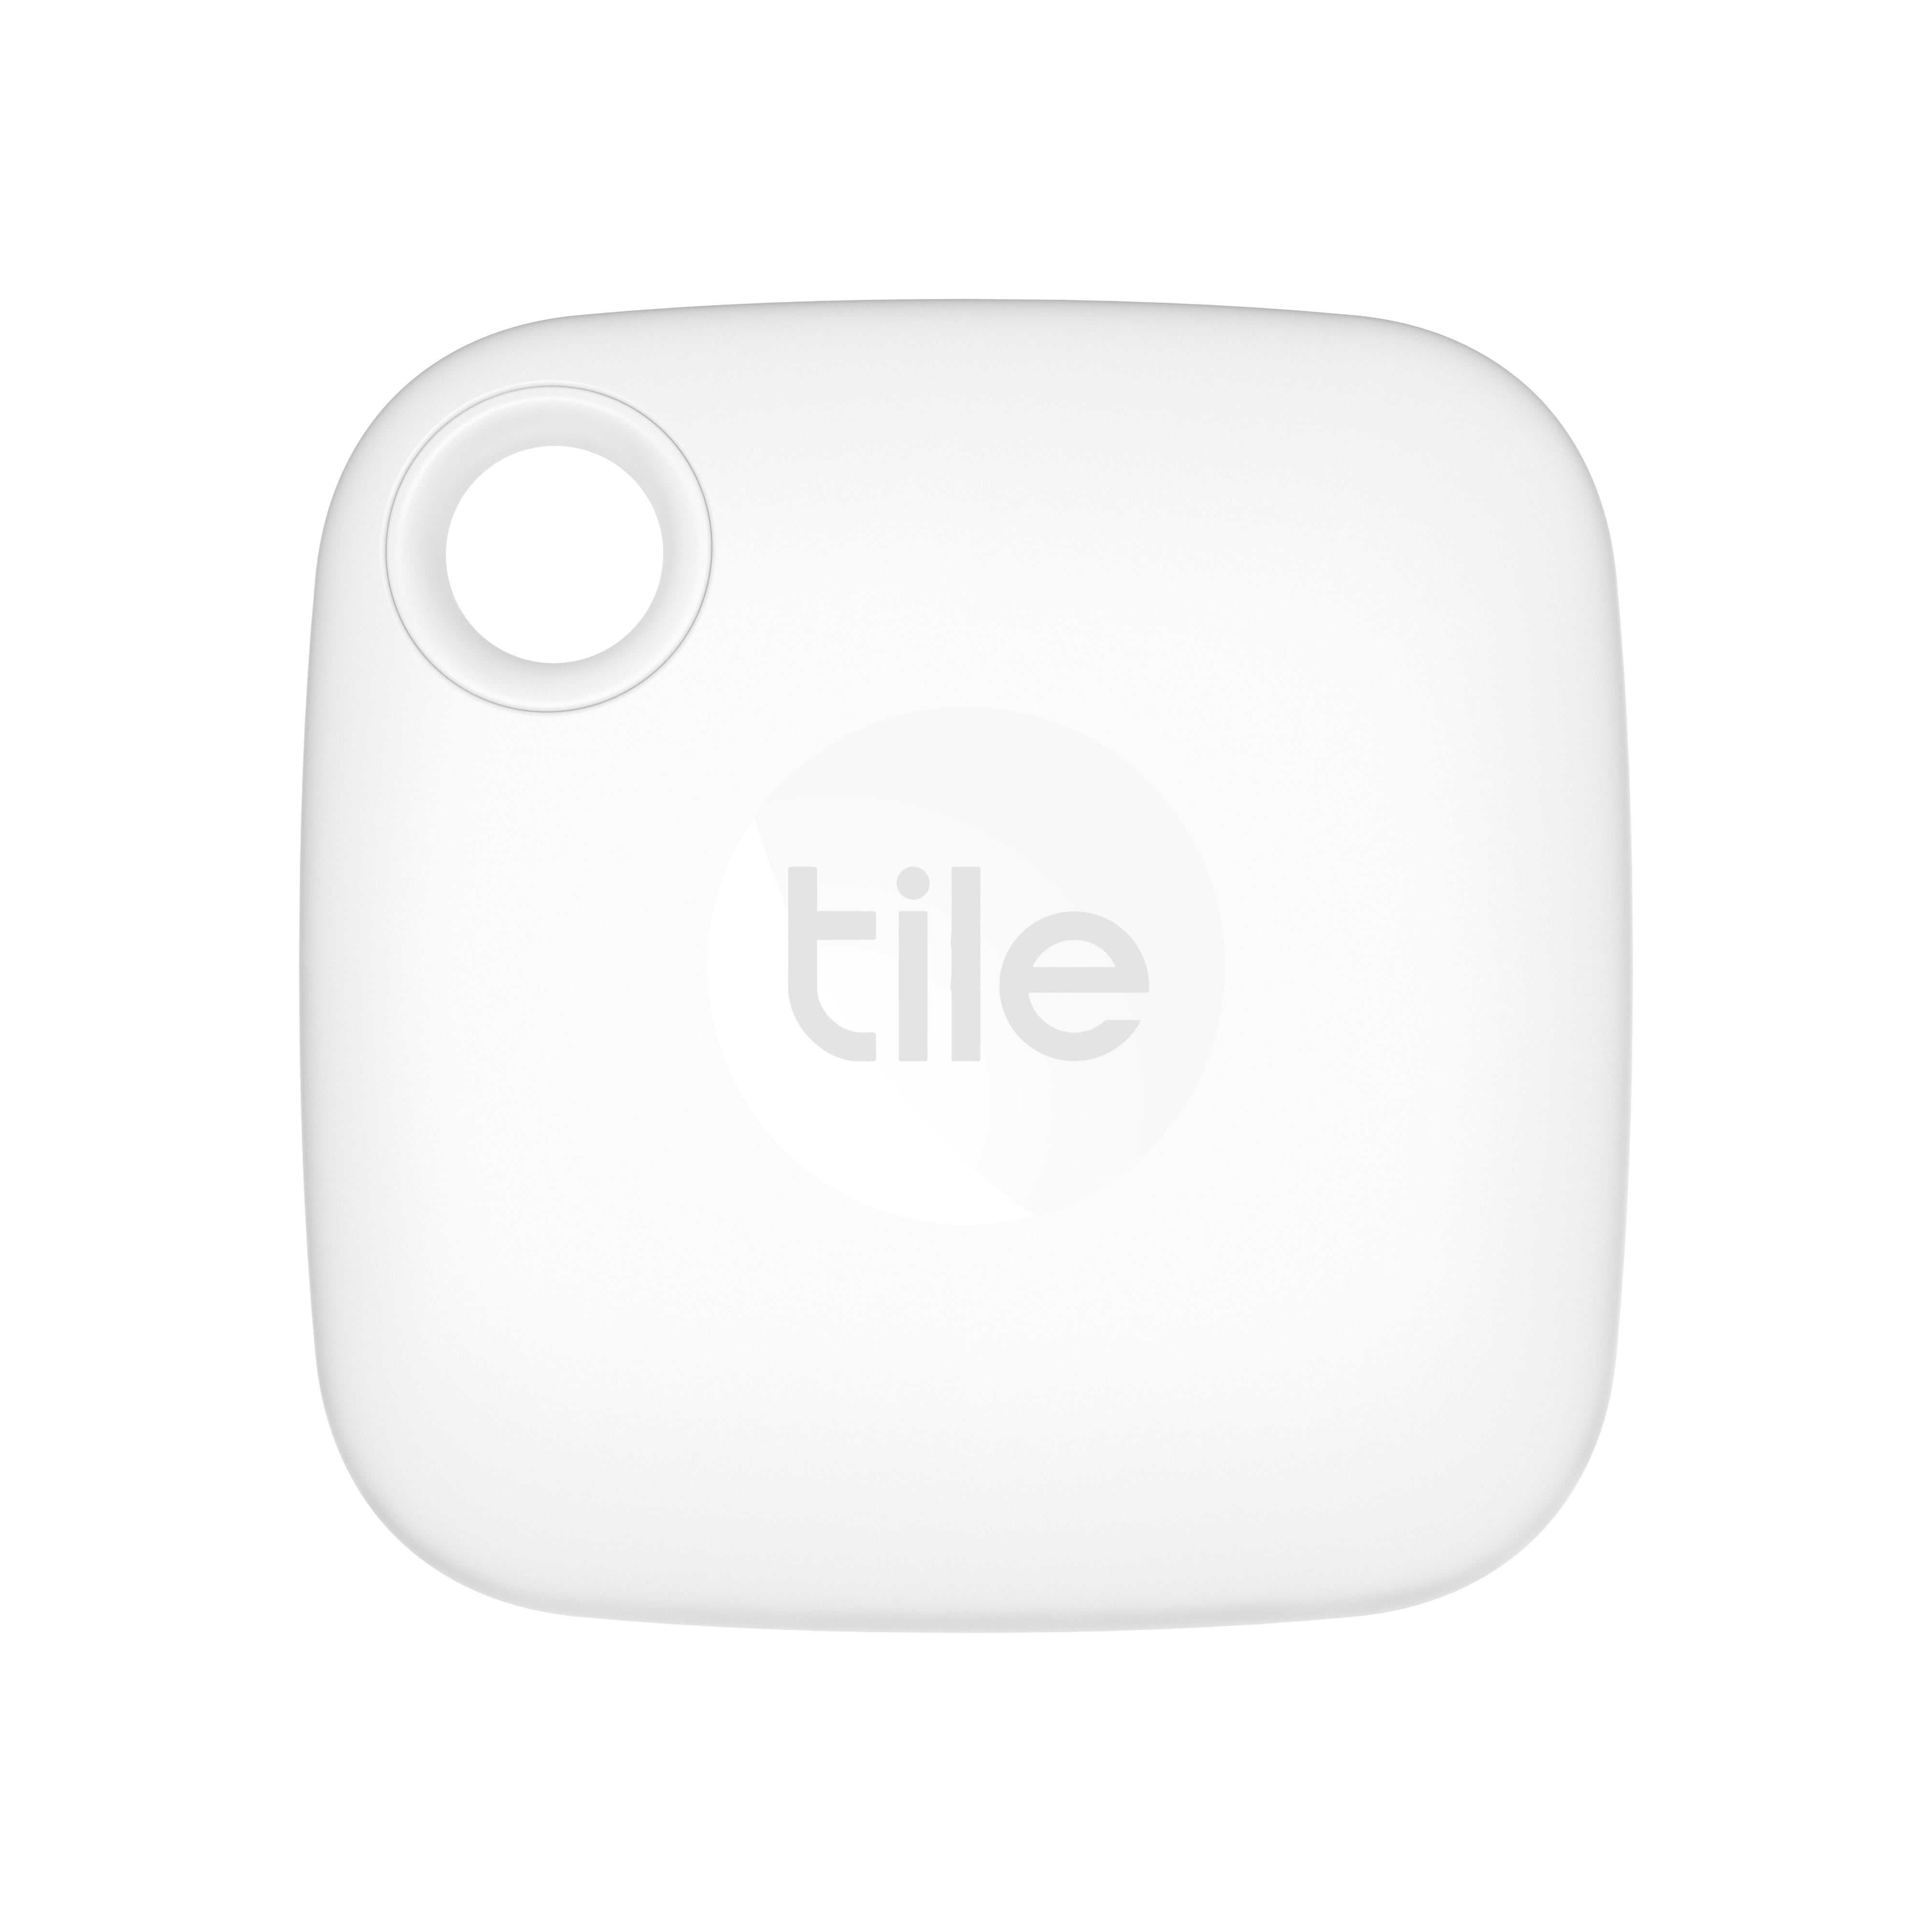 Tile Mate - 1 pack - White - Walmart.com